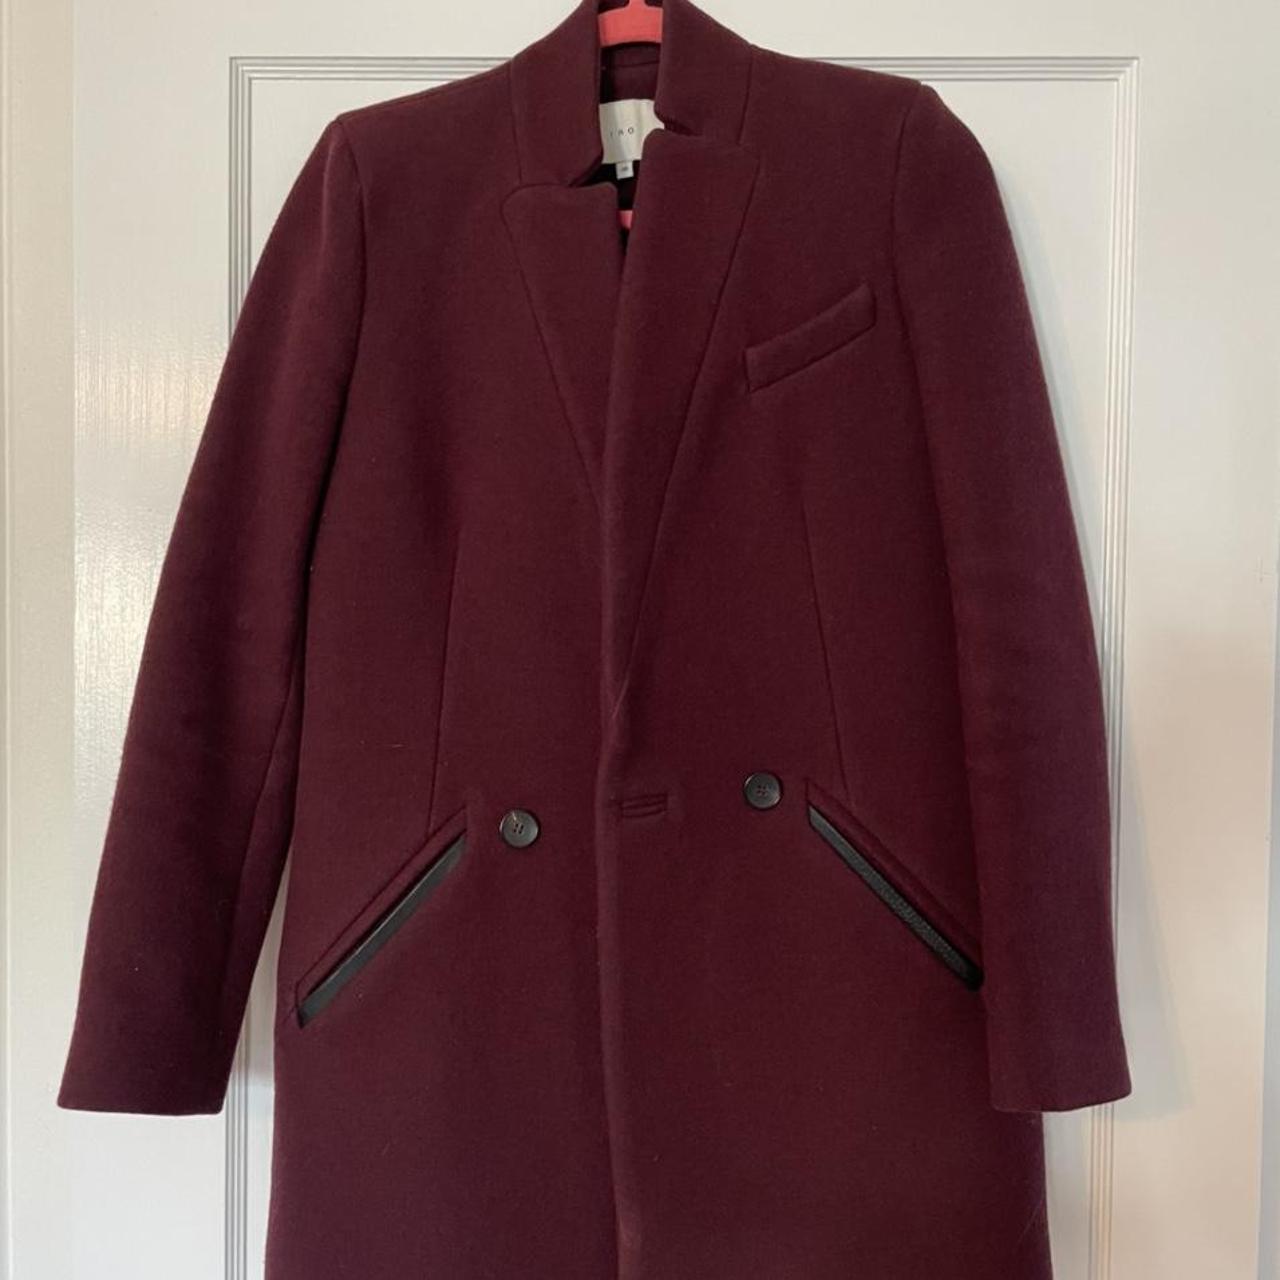 IRO Women's Burgundy Coat